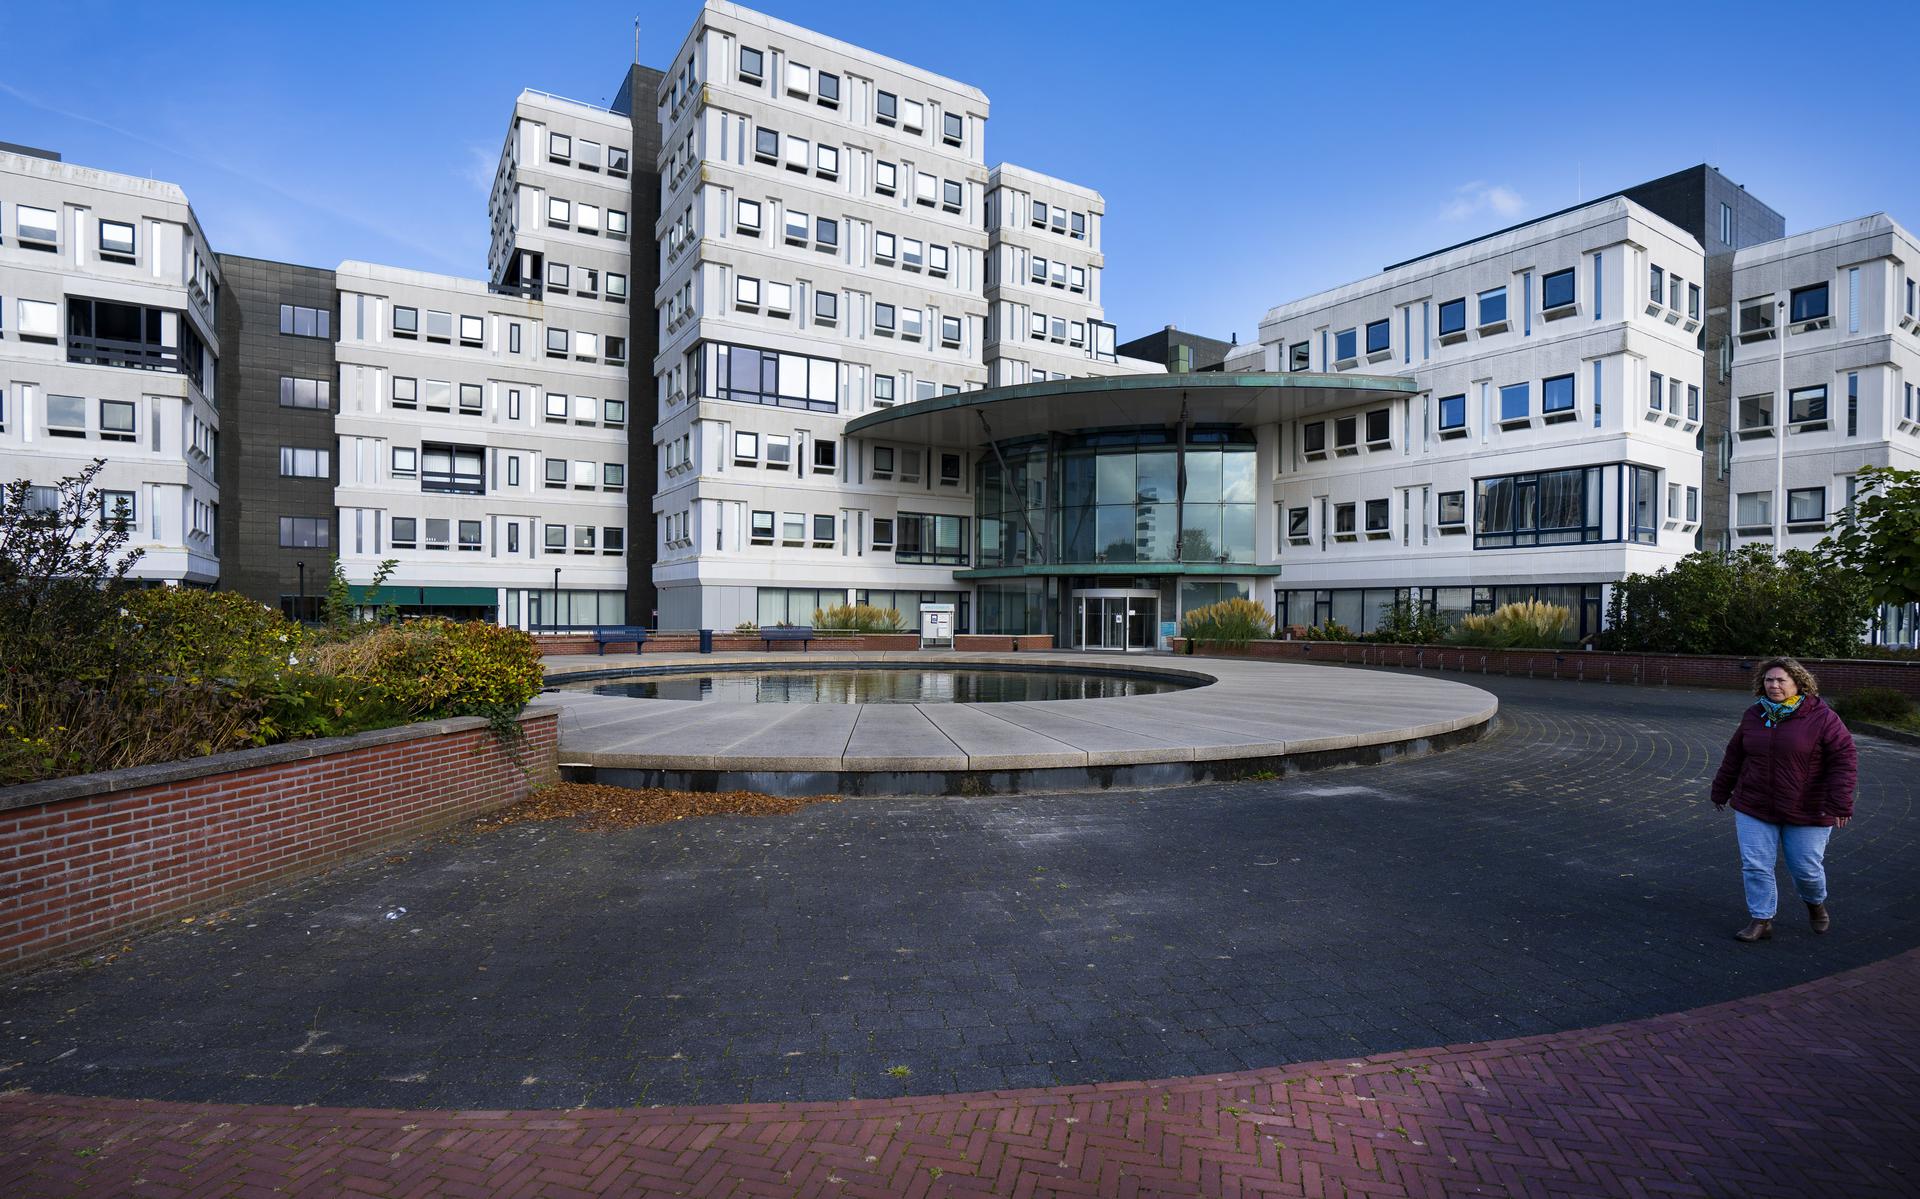 Geen appartementen in voormalige kantoren De Friesland Zorgverzekeraar
